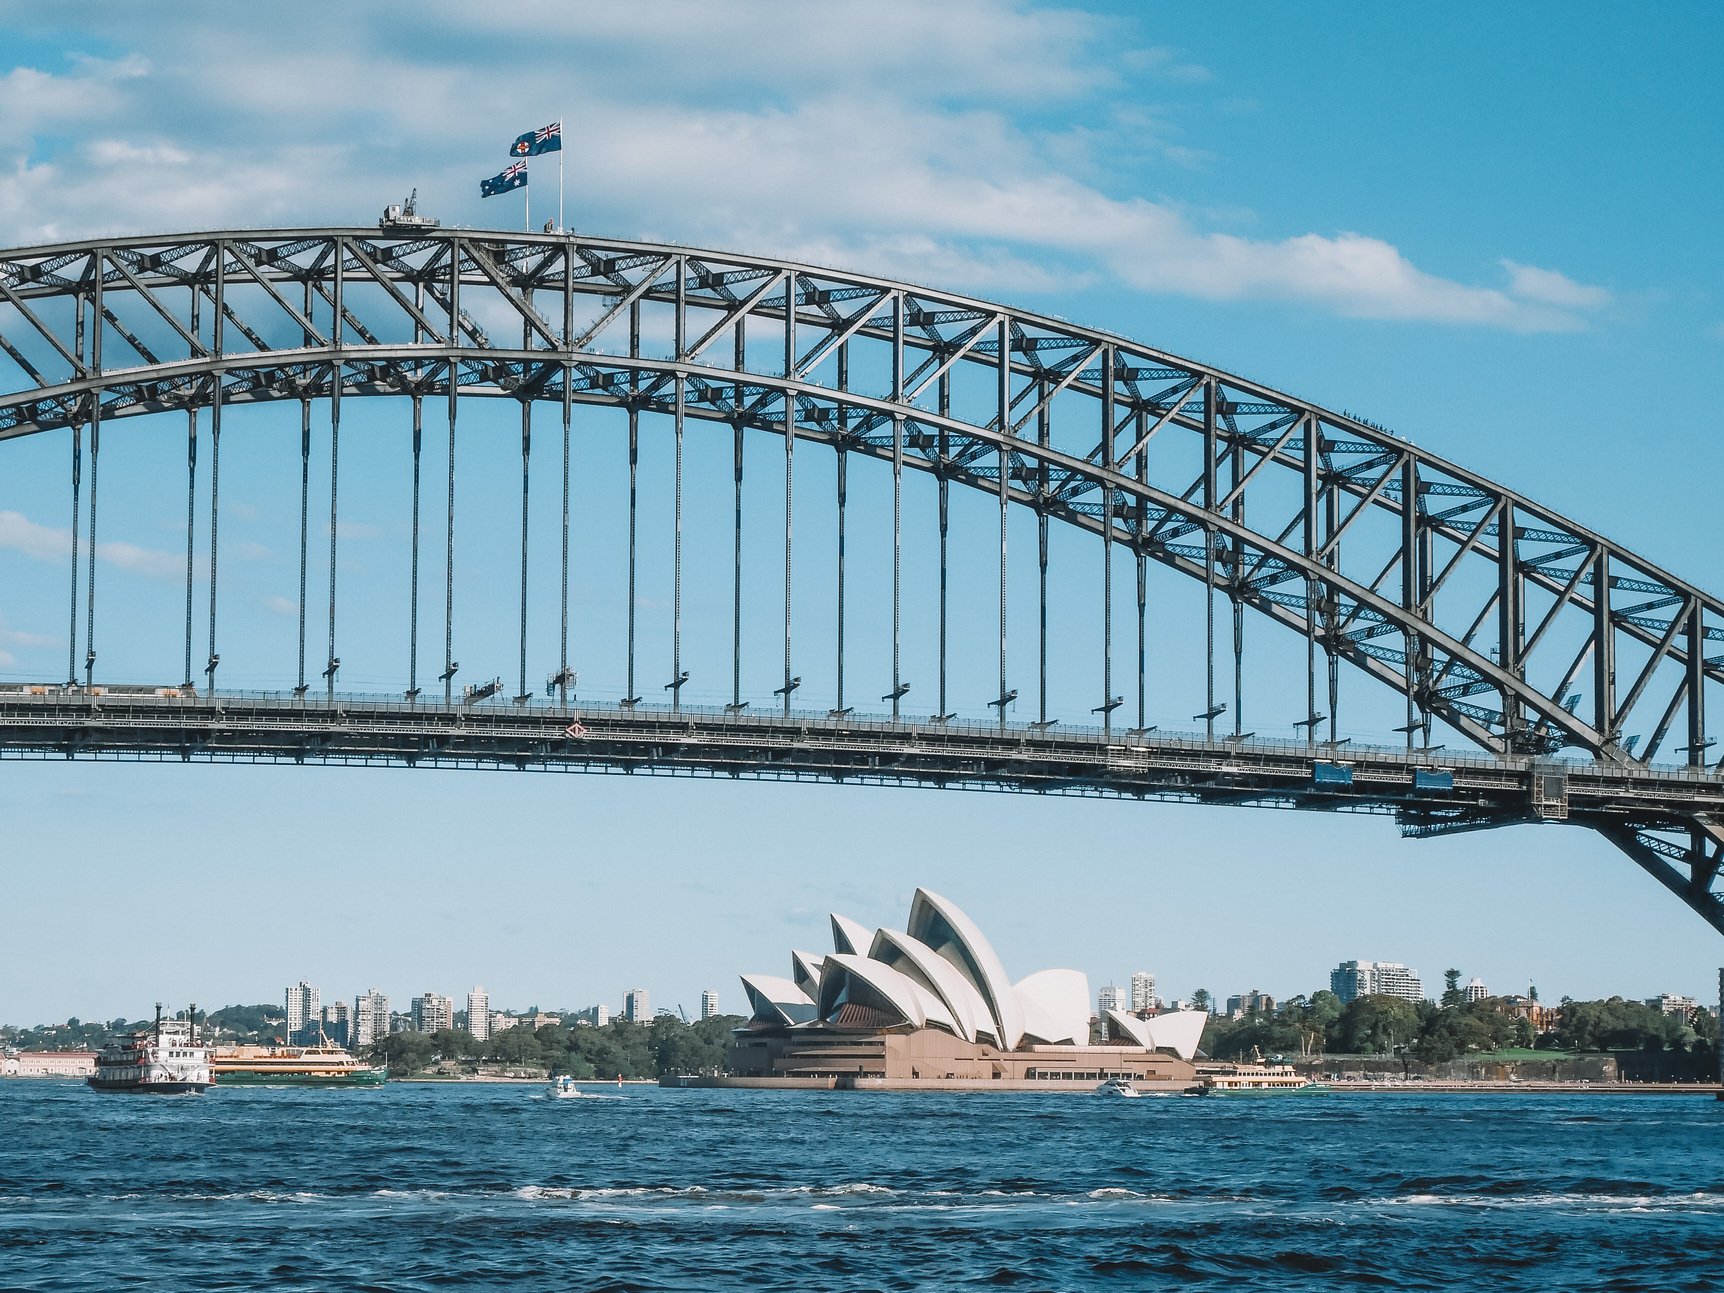 Le Harbour Bridge et l'Opéra House vus depuis le bateau - Sydney - Nouvelle-Galles-du-Sud (NSW) - Australie